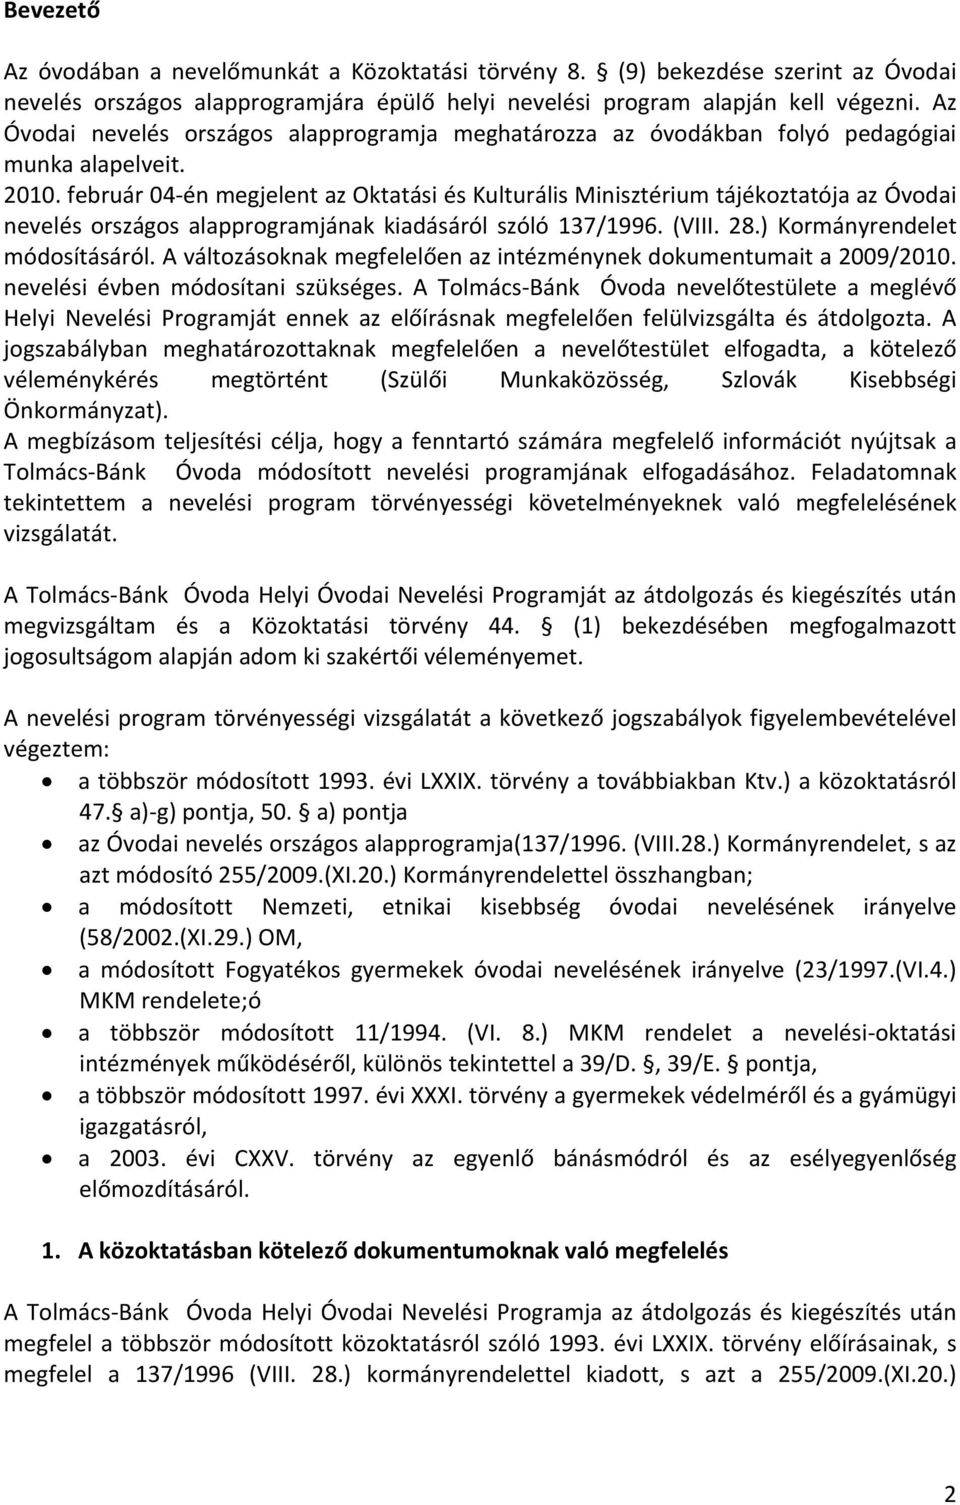 február 04 én megjelent az Oktatási és Kulturális Minisztérium tájékoztatója az Óvodai nevelés országos alapprogramjának kiadásáról szóló 137/1996. (VIII. 28.) Kormányrendelet módosításáról.